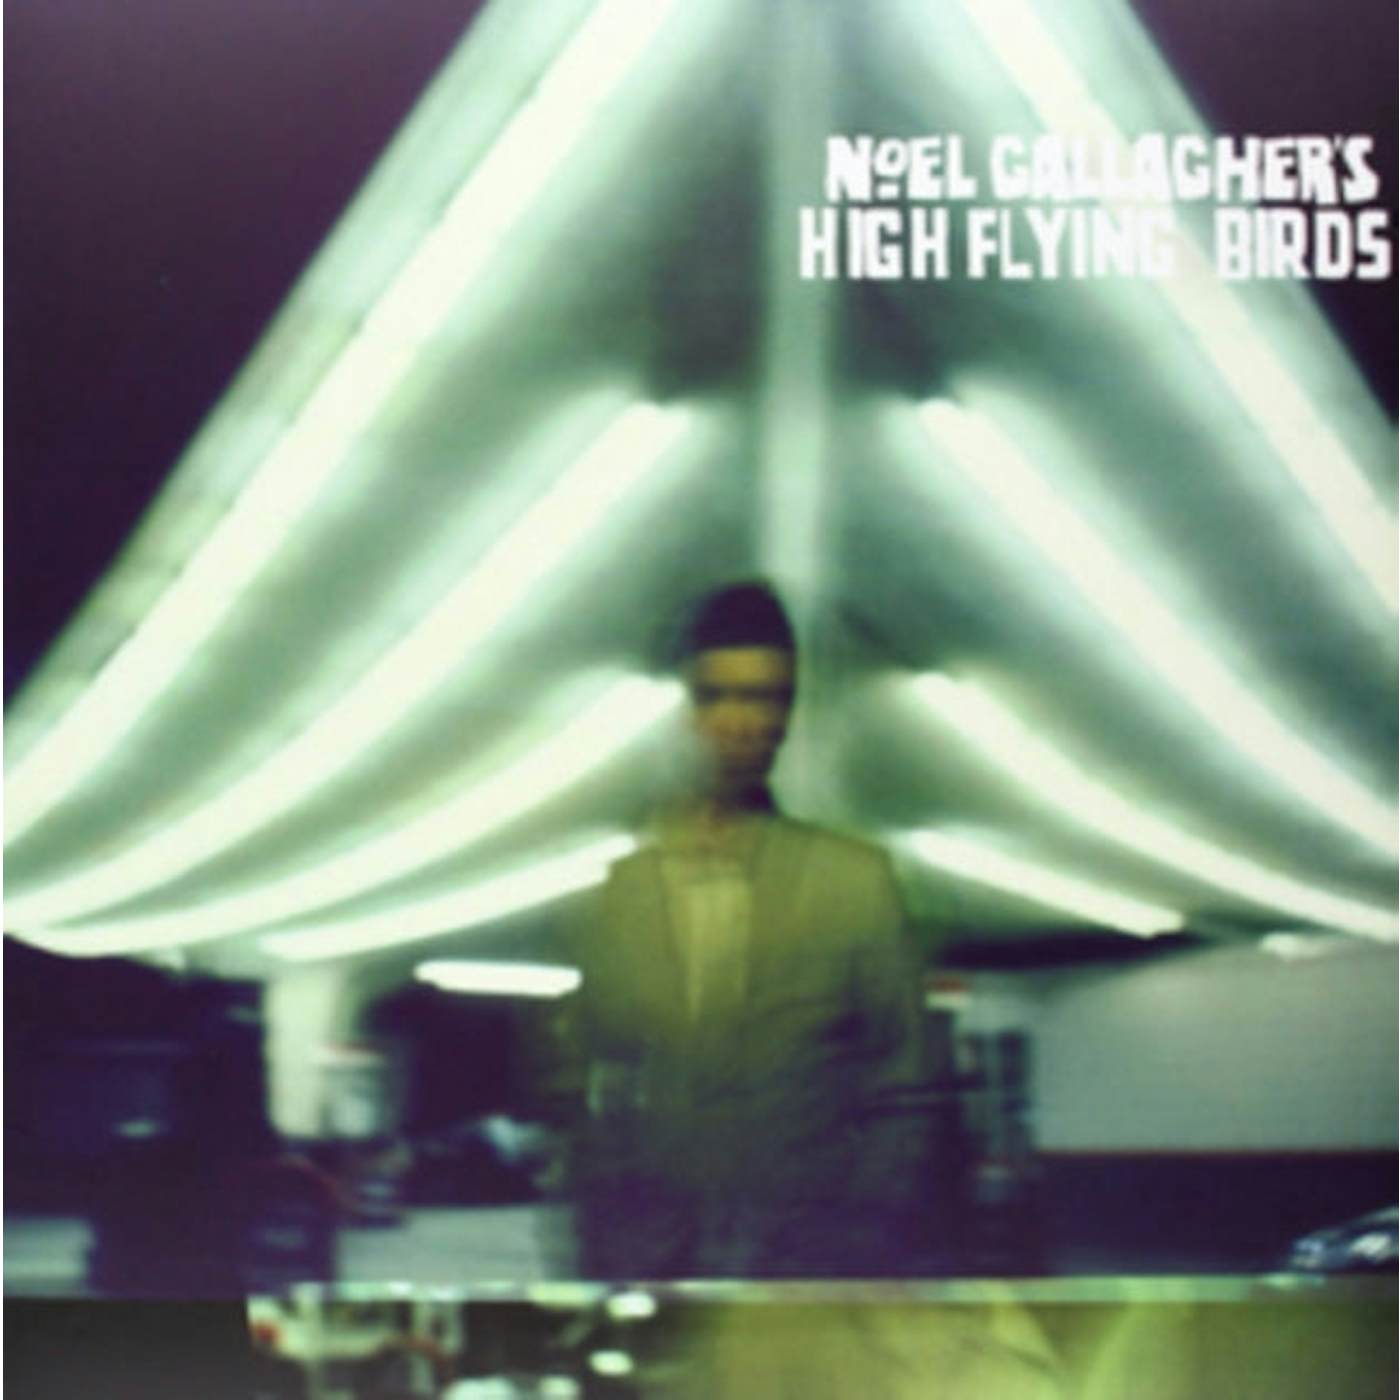 Noel Gallagher's High Flying Birds LP - Noel Gallagher's High Flying Birds (Vinyl)